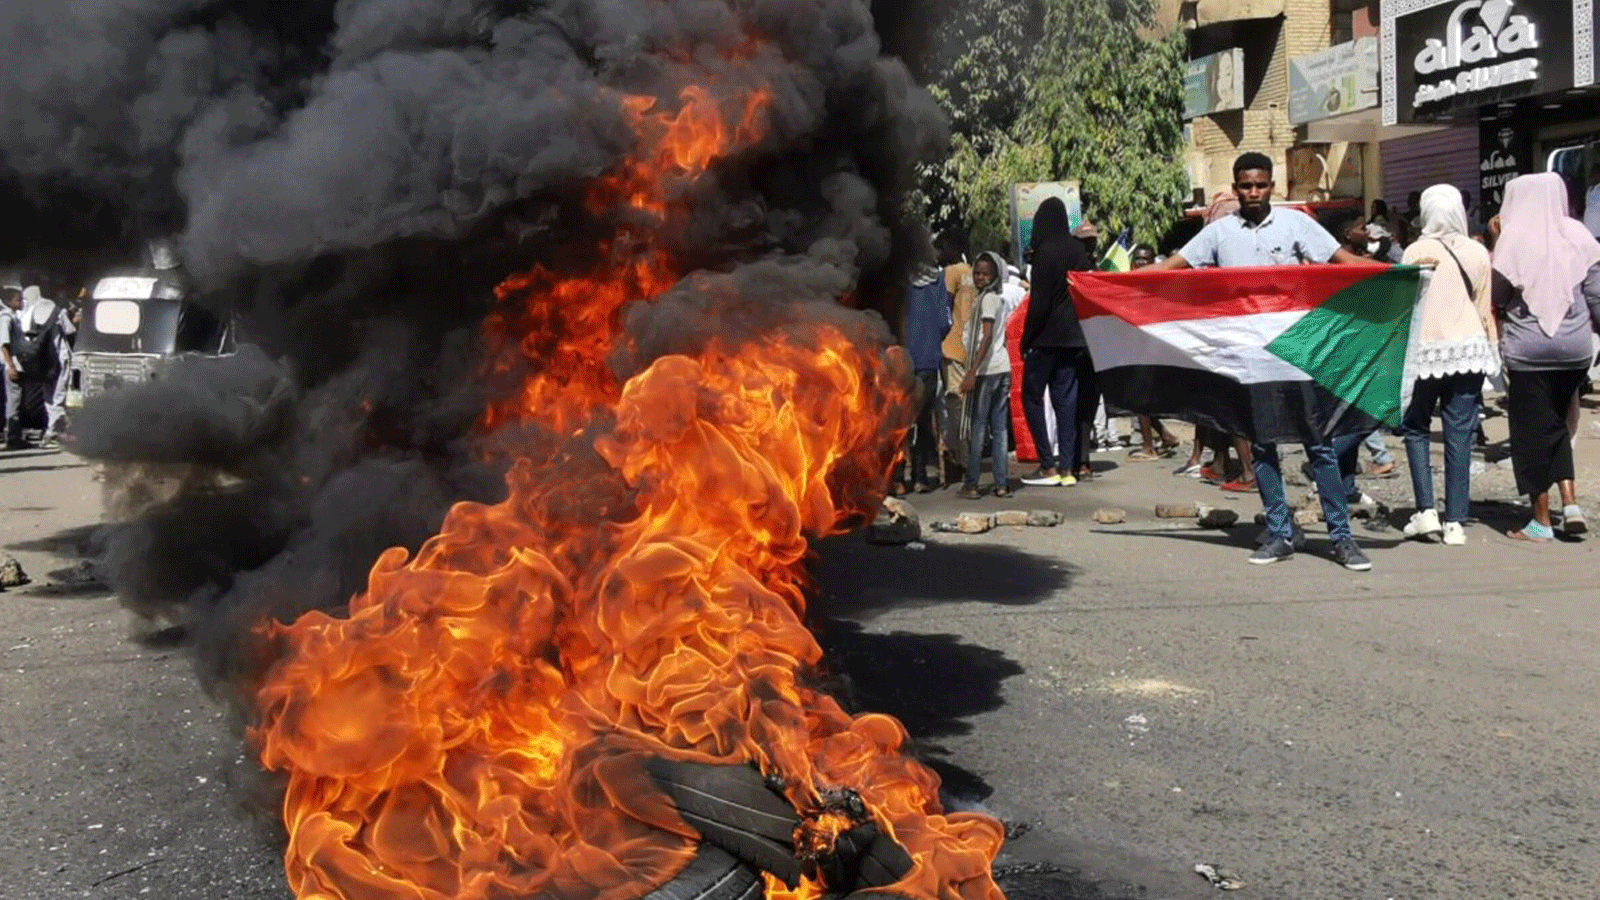 متظاهرون سودانيون يمرون بالقرب من الإطارات المحترقة أثناء تجمعهم للاحتجاج على الانقلاب العسكري